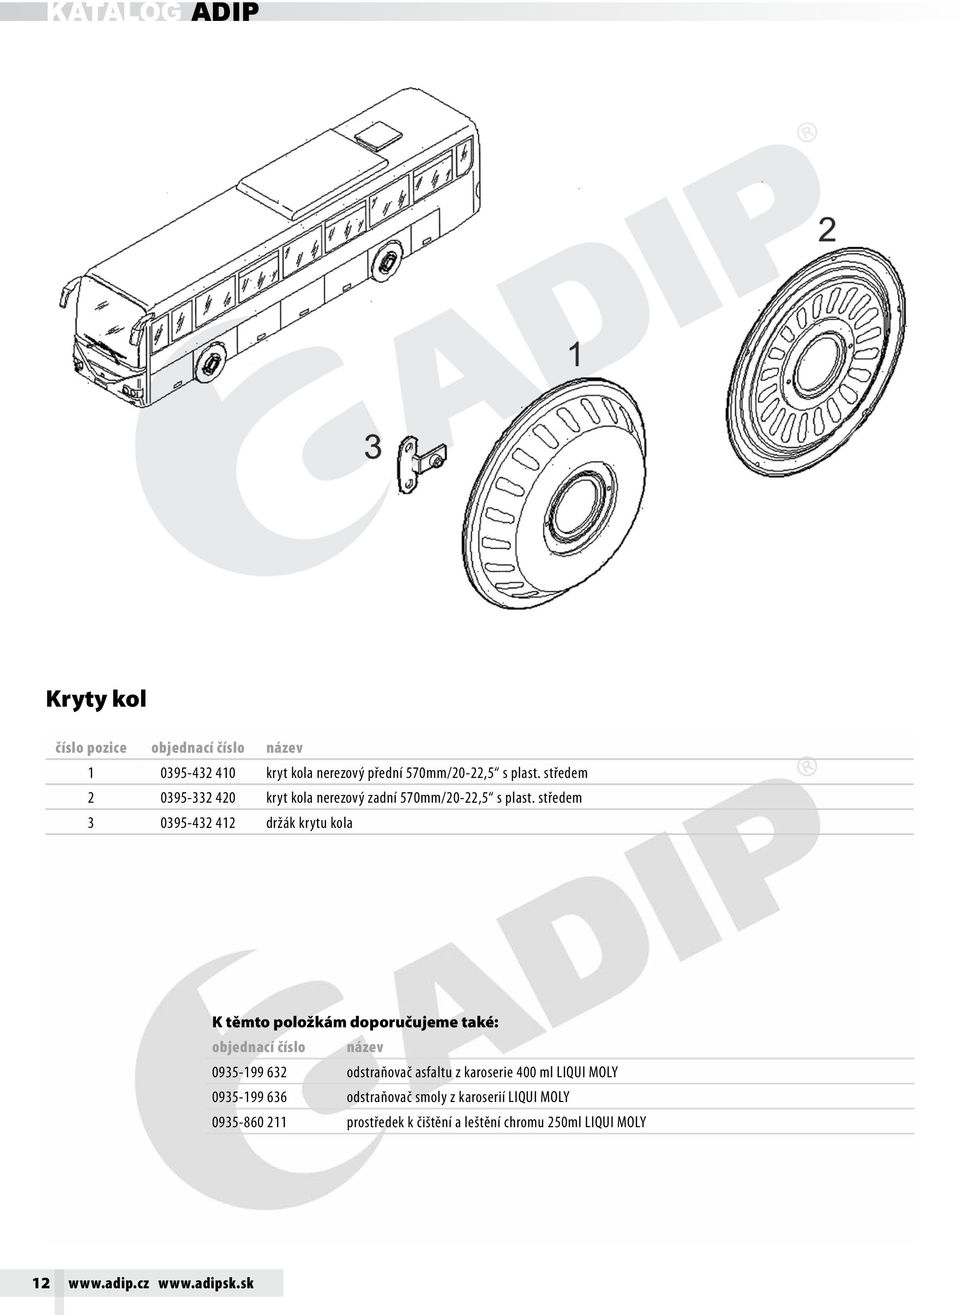 IC1 KATALOG ADIP. Přehled náhradních dílů   PDF Free Download